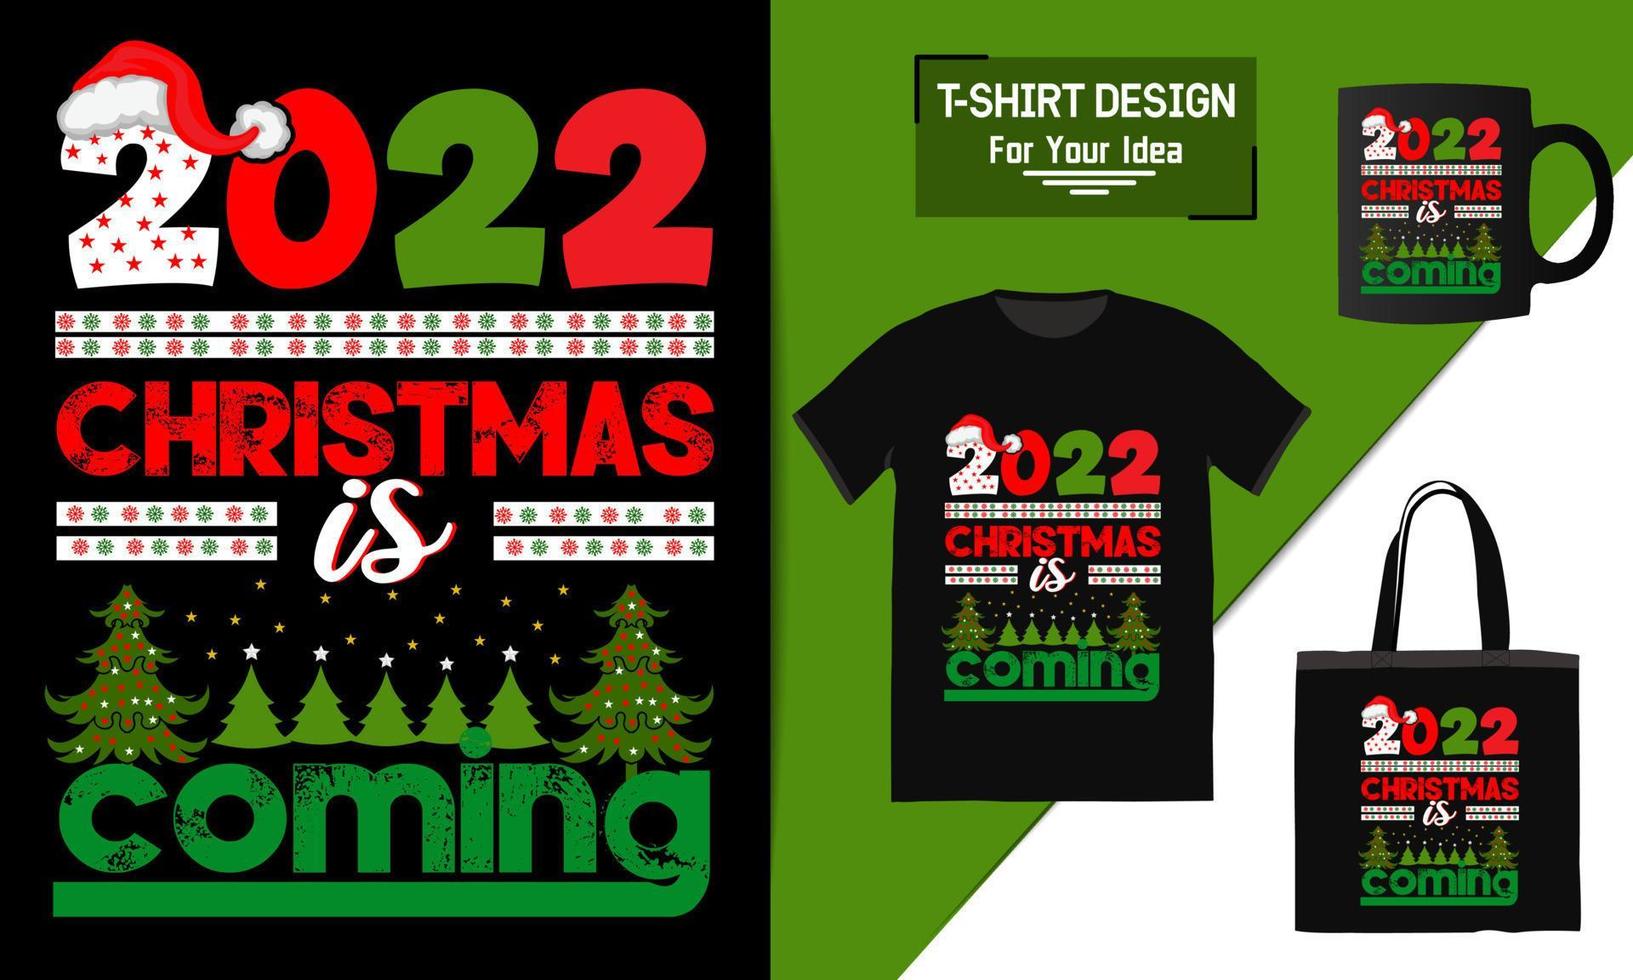 bolsa de diseño de camiseta de feliz navidad y maqueta de taza para merchandising este diseño es perfecto para camisetas vector